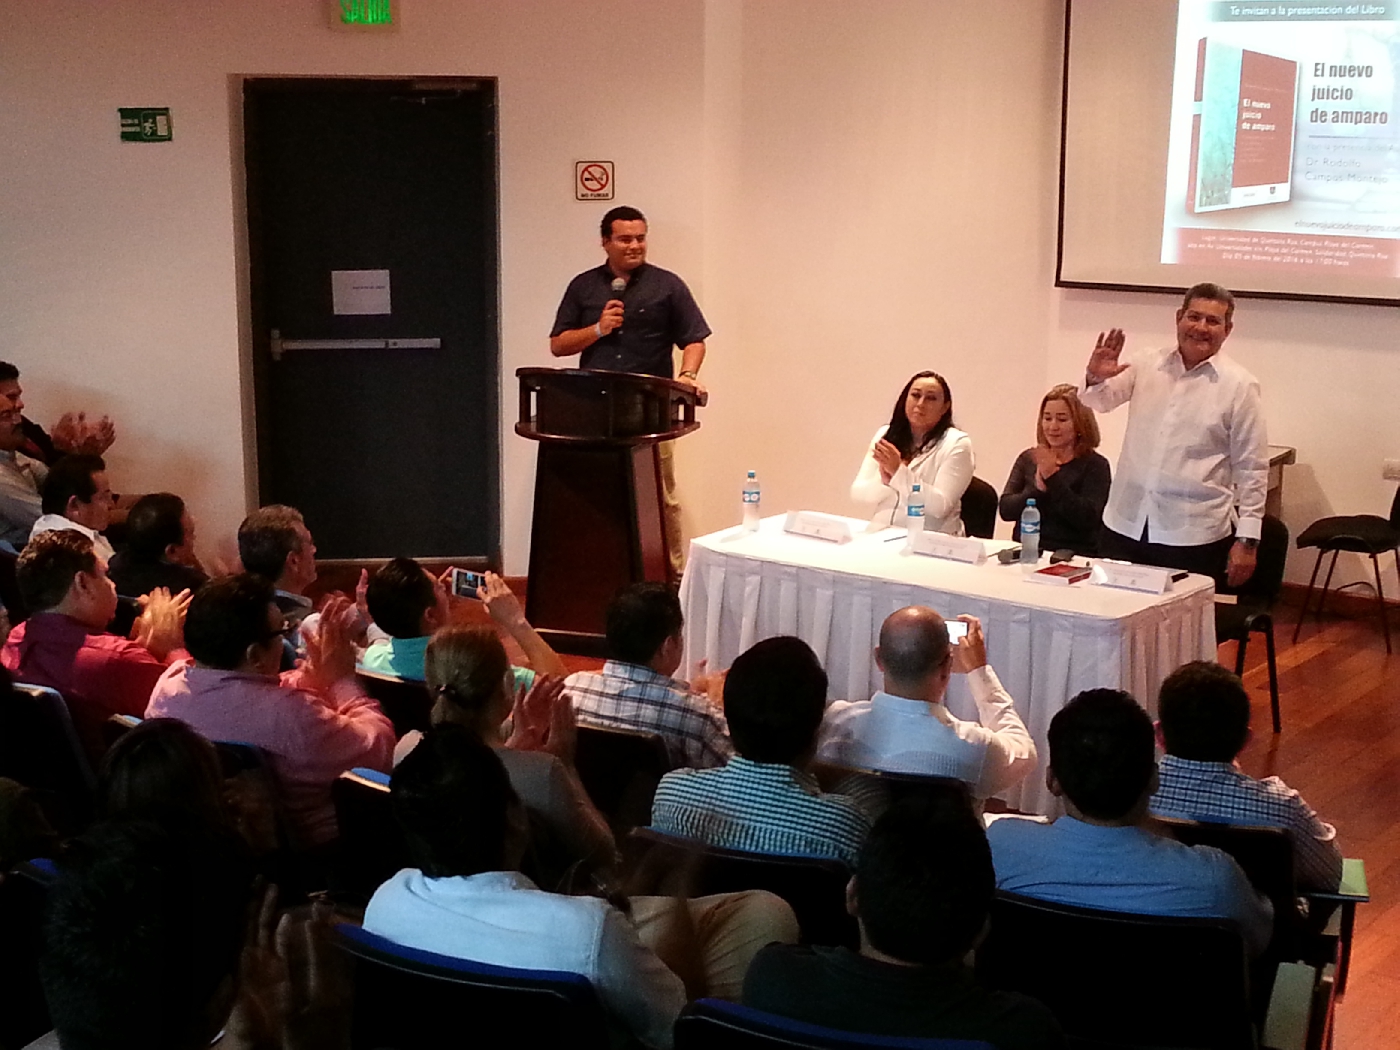 Presentación del libro “El nuevo juicio de amparo” en la Unidad Académica Playa del Carmen